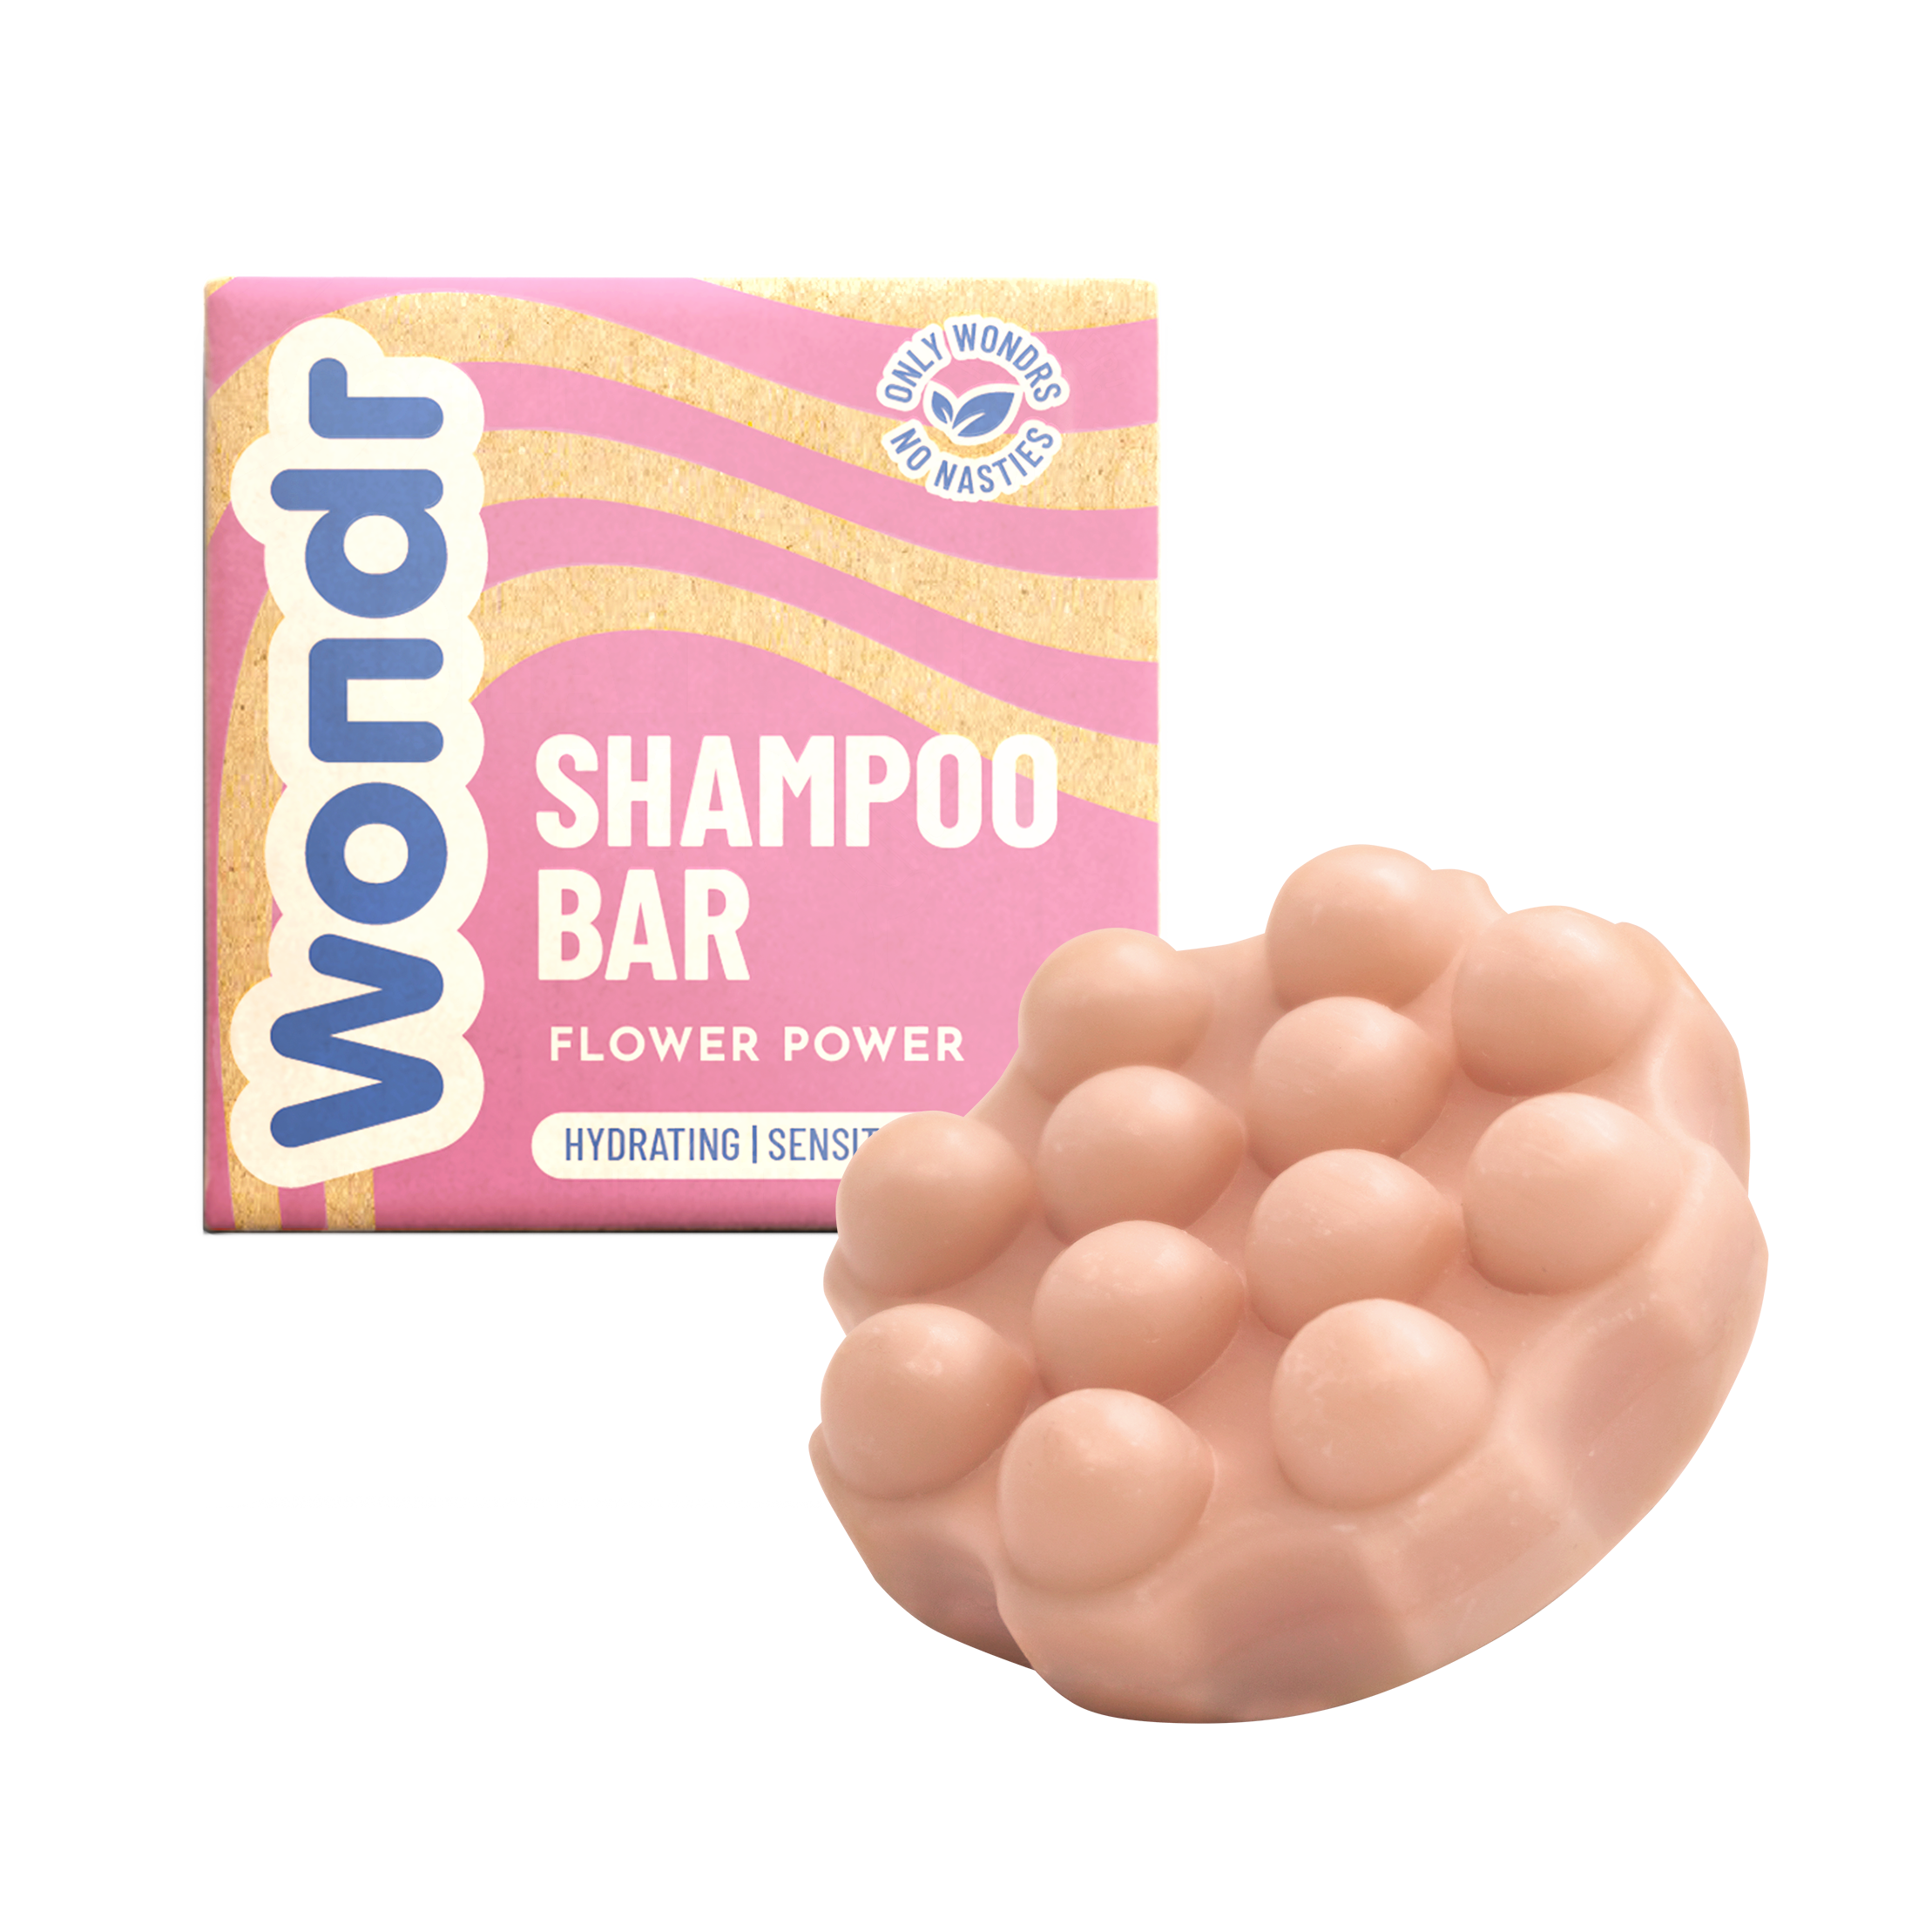 Wondr Flower power shampoo bar